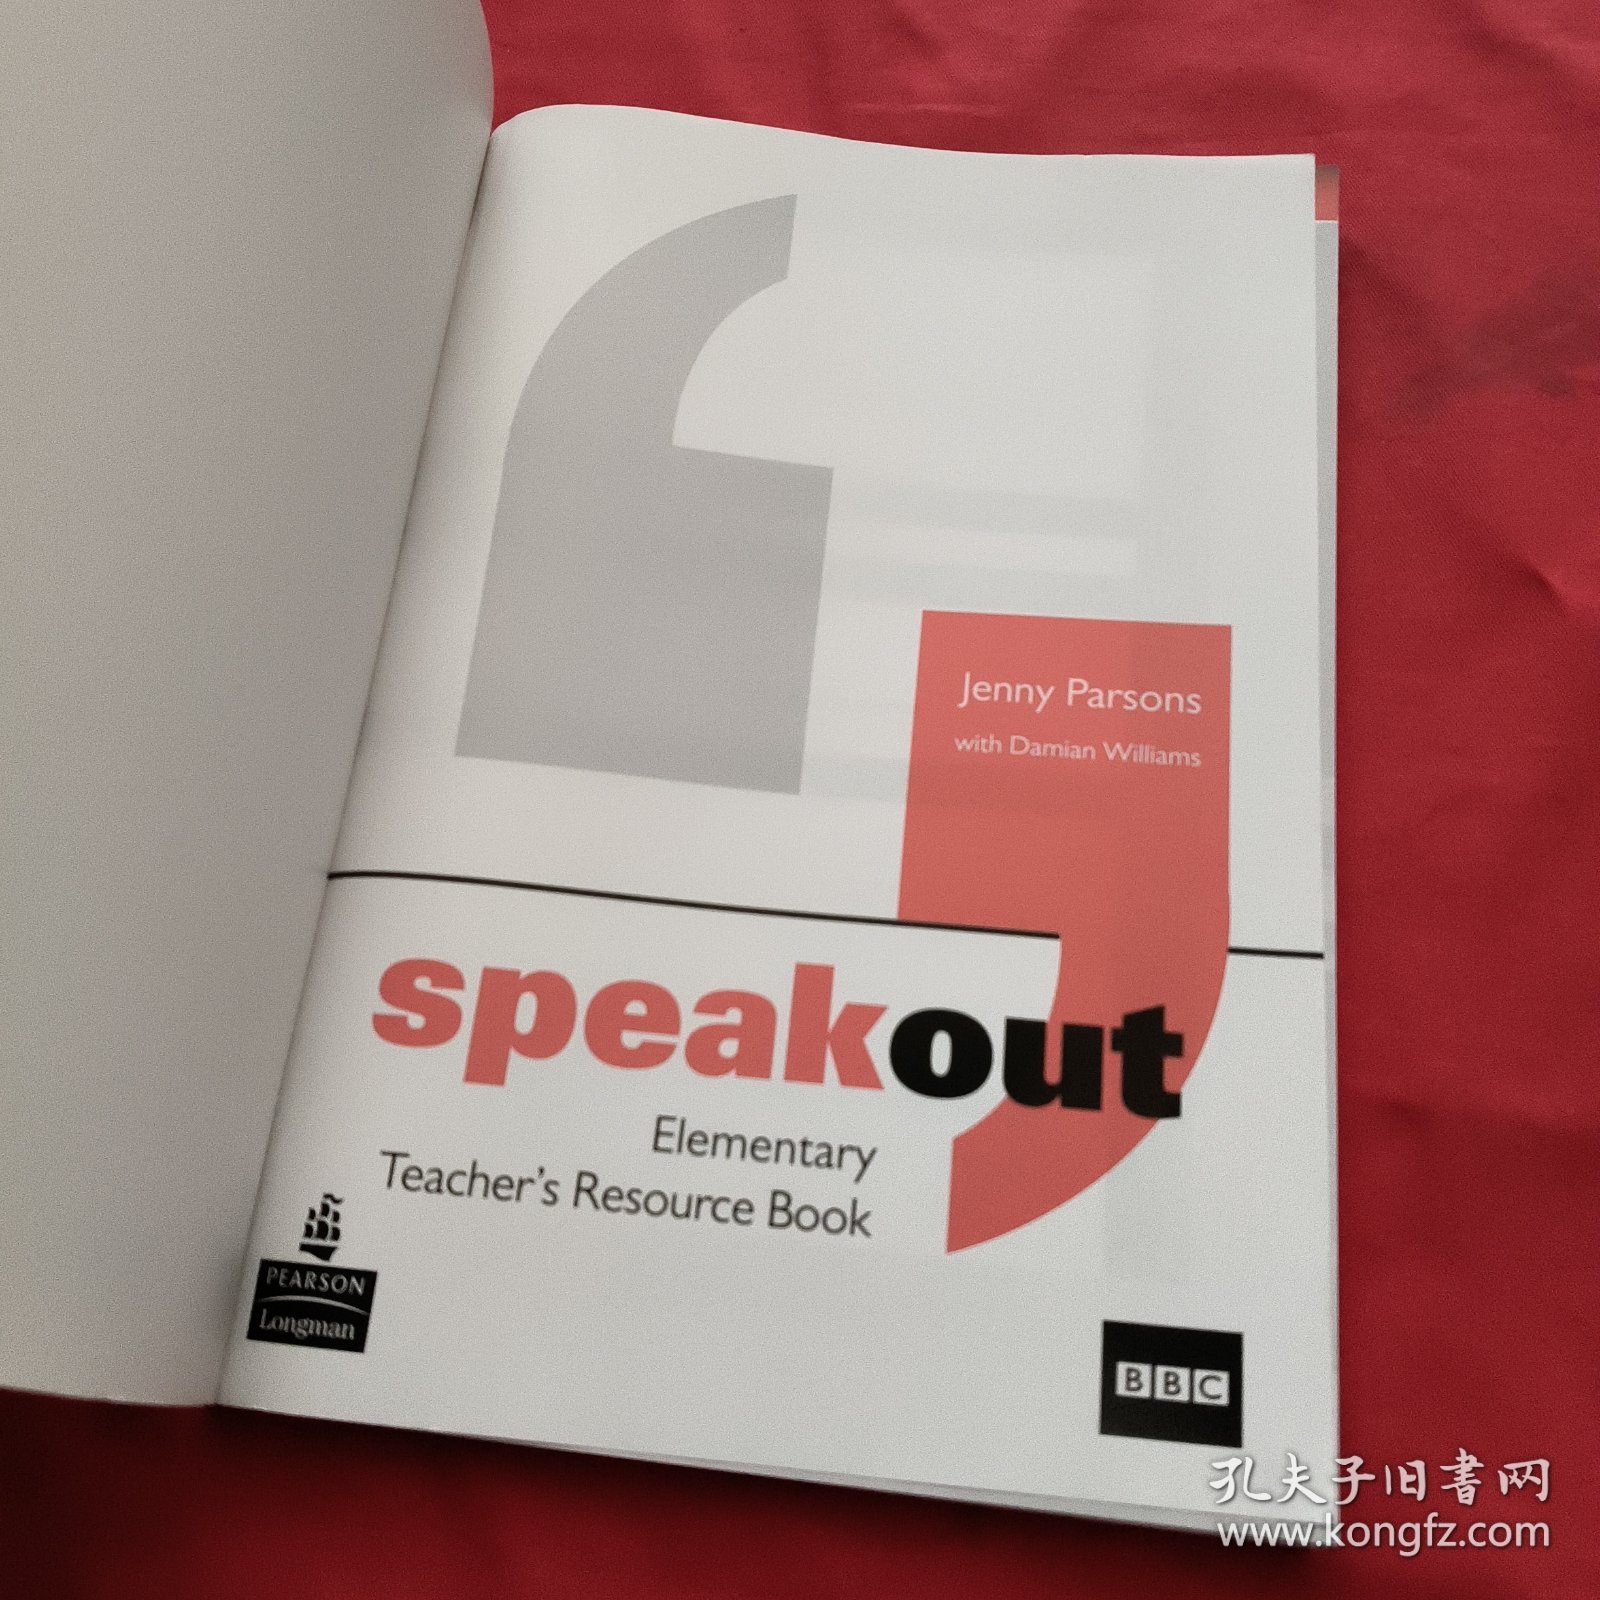 speakout Elementary Teacher's Resource Book